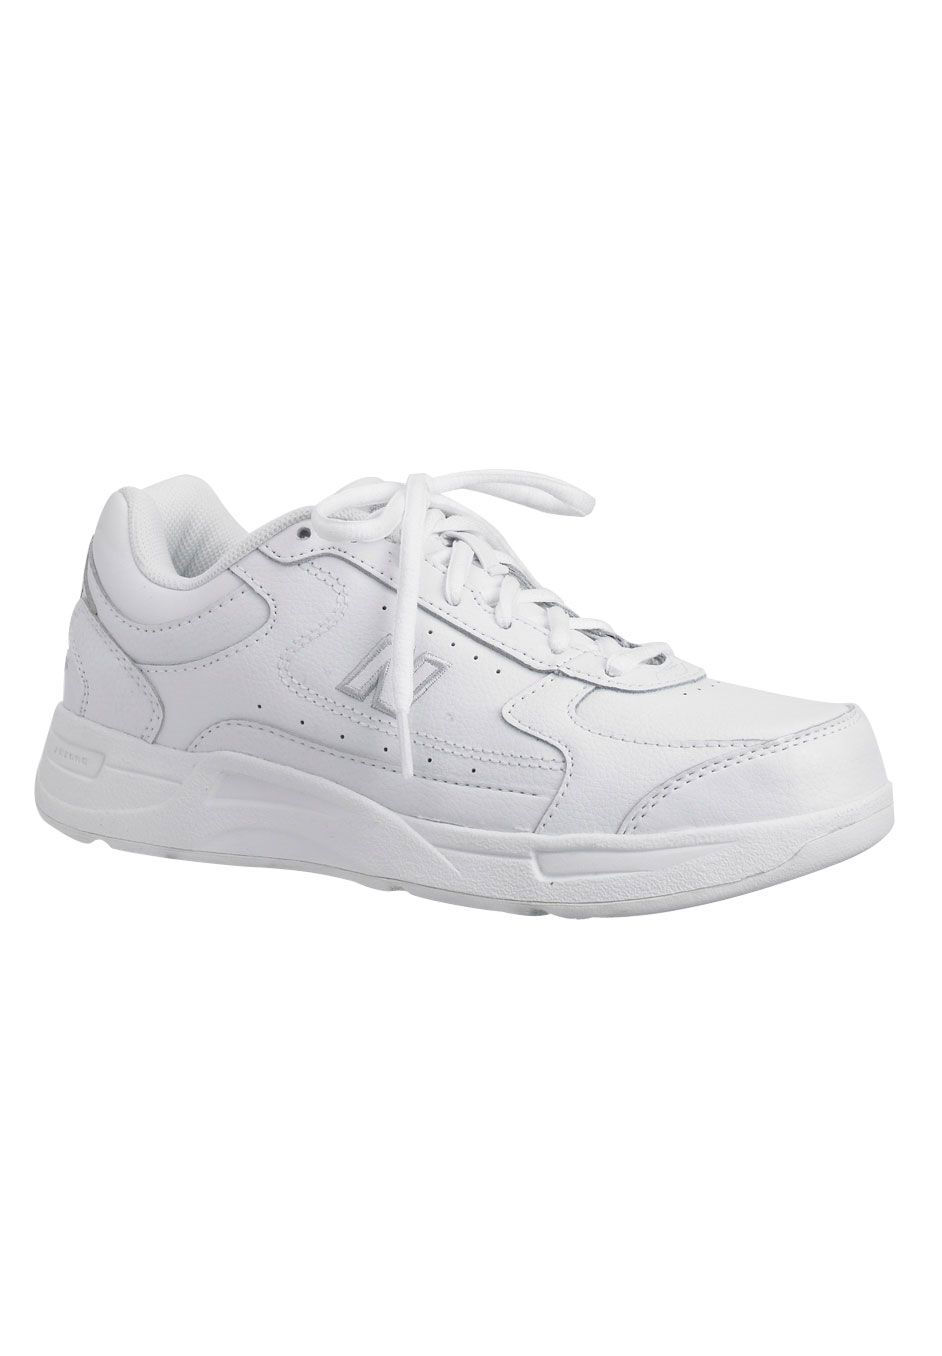 Women's The 577 Walker Sneaker by New Balance in White (Size 7 1/2 B)